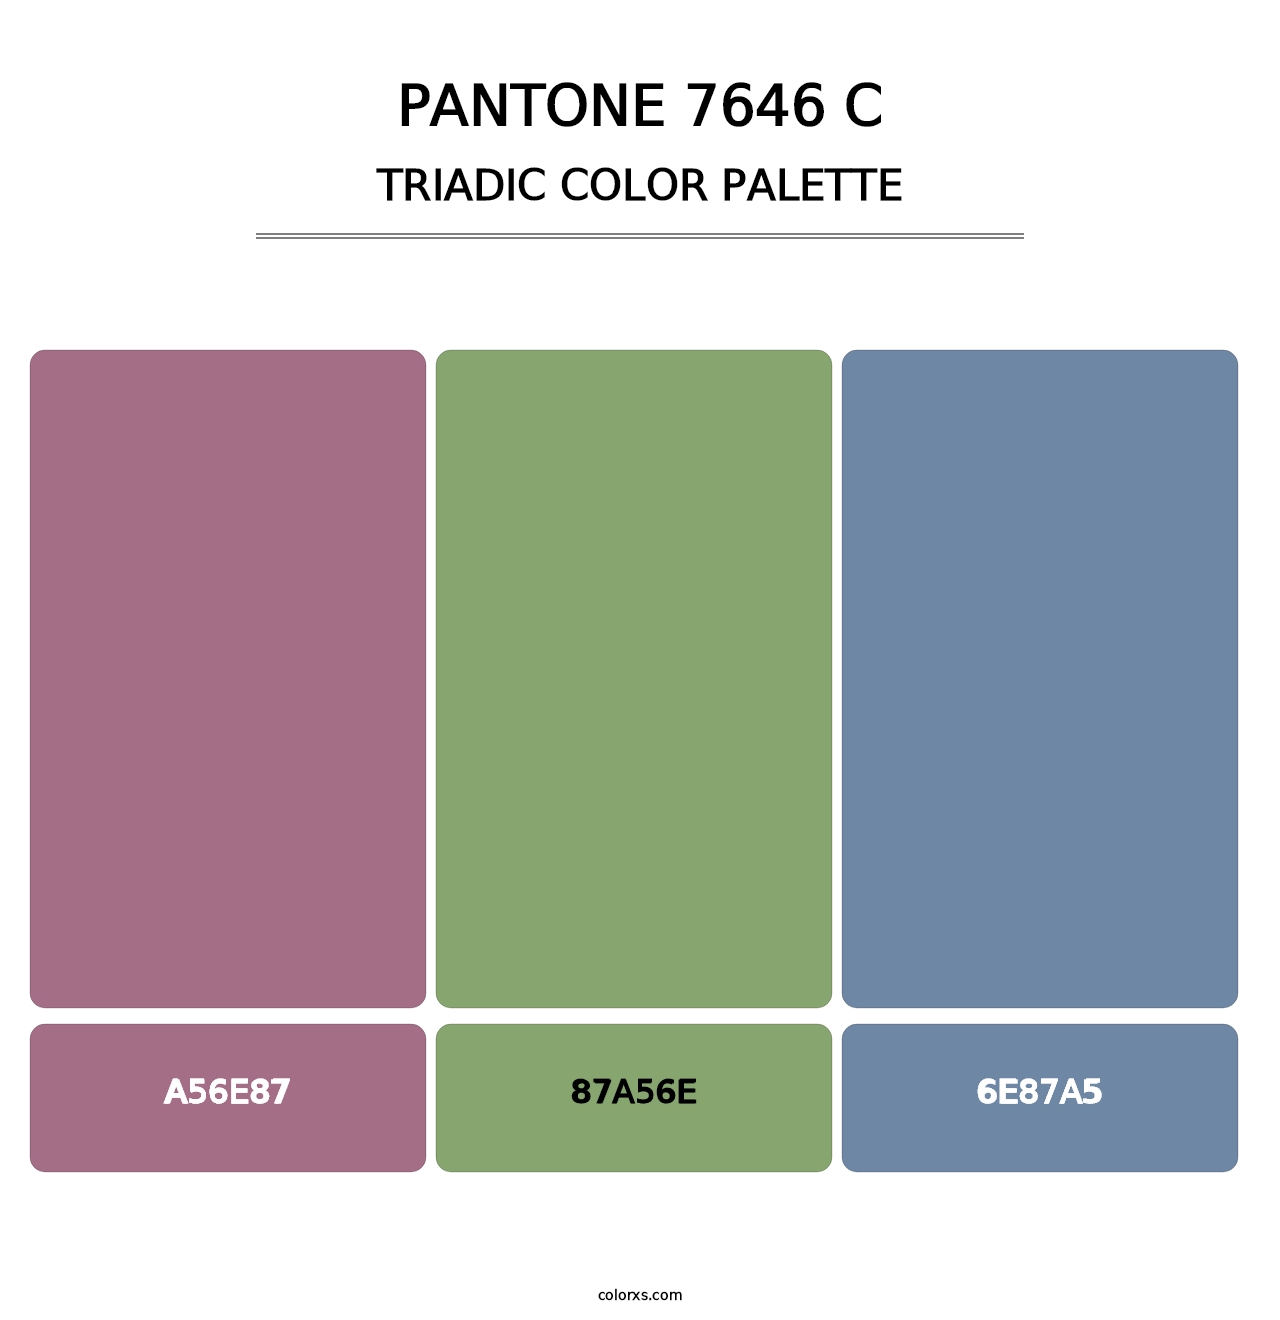 PANTONE 7646 C - Triadic Color Palette